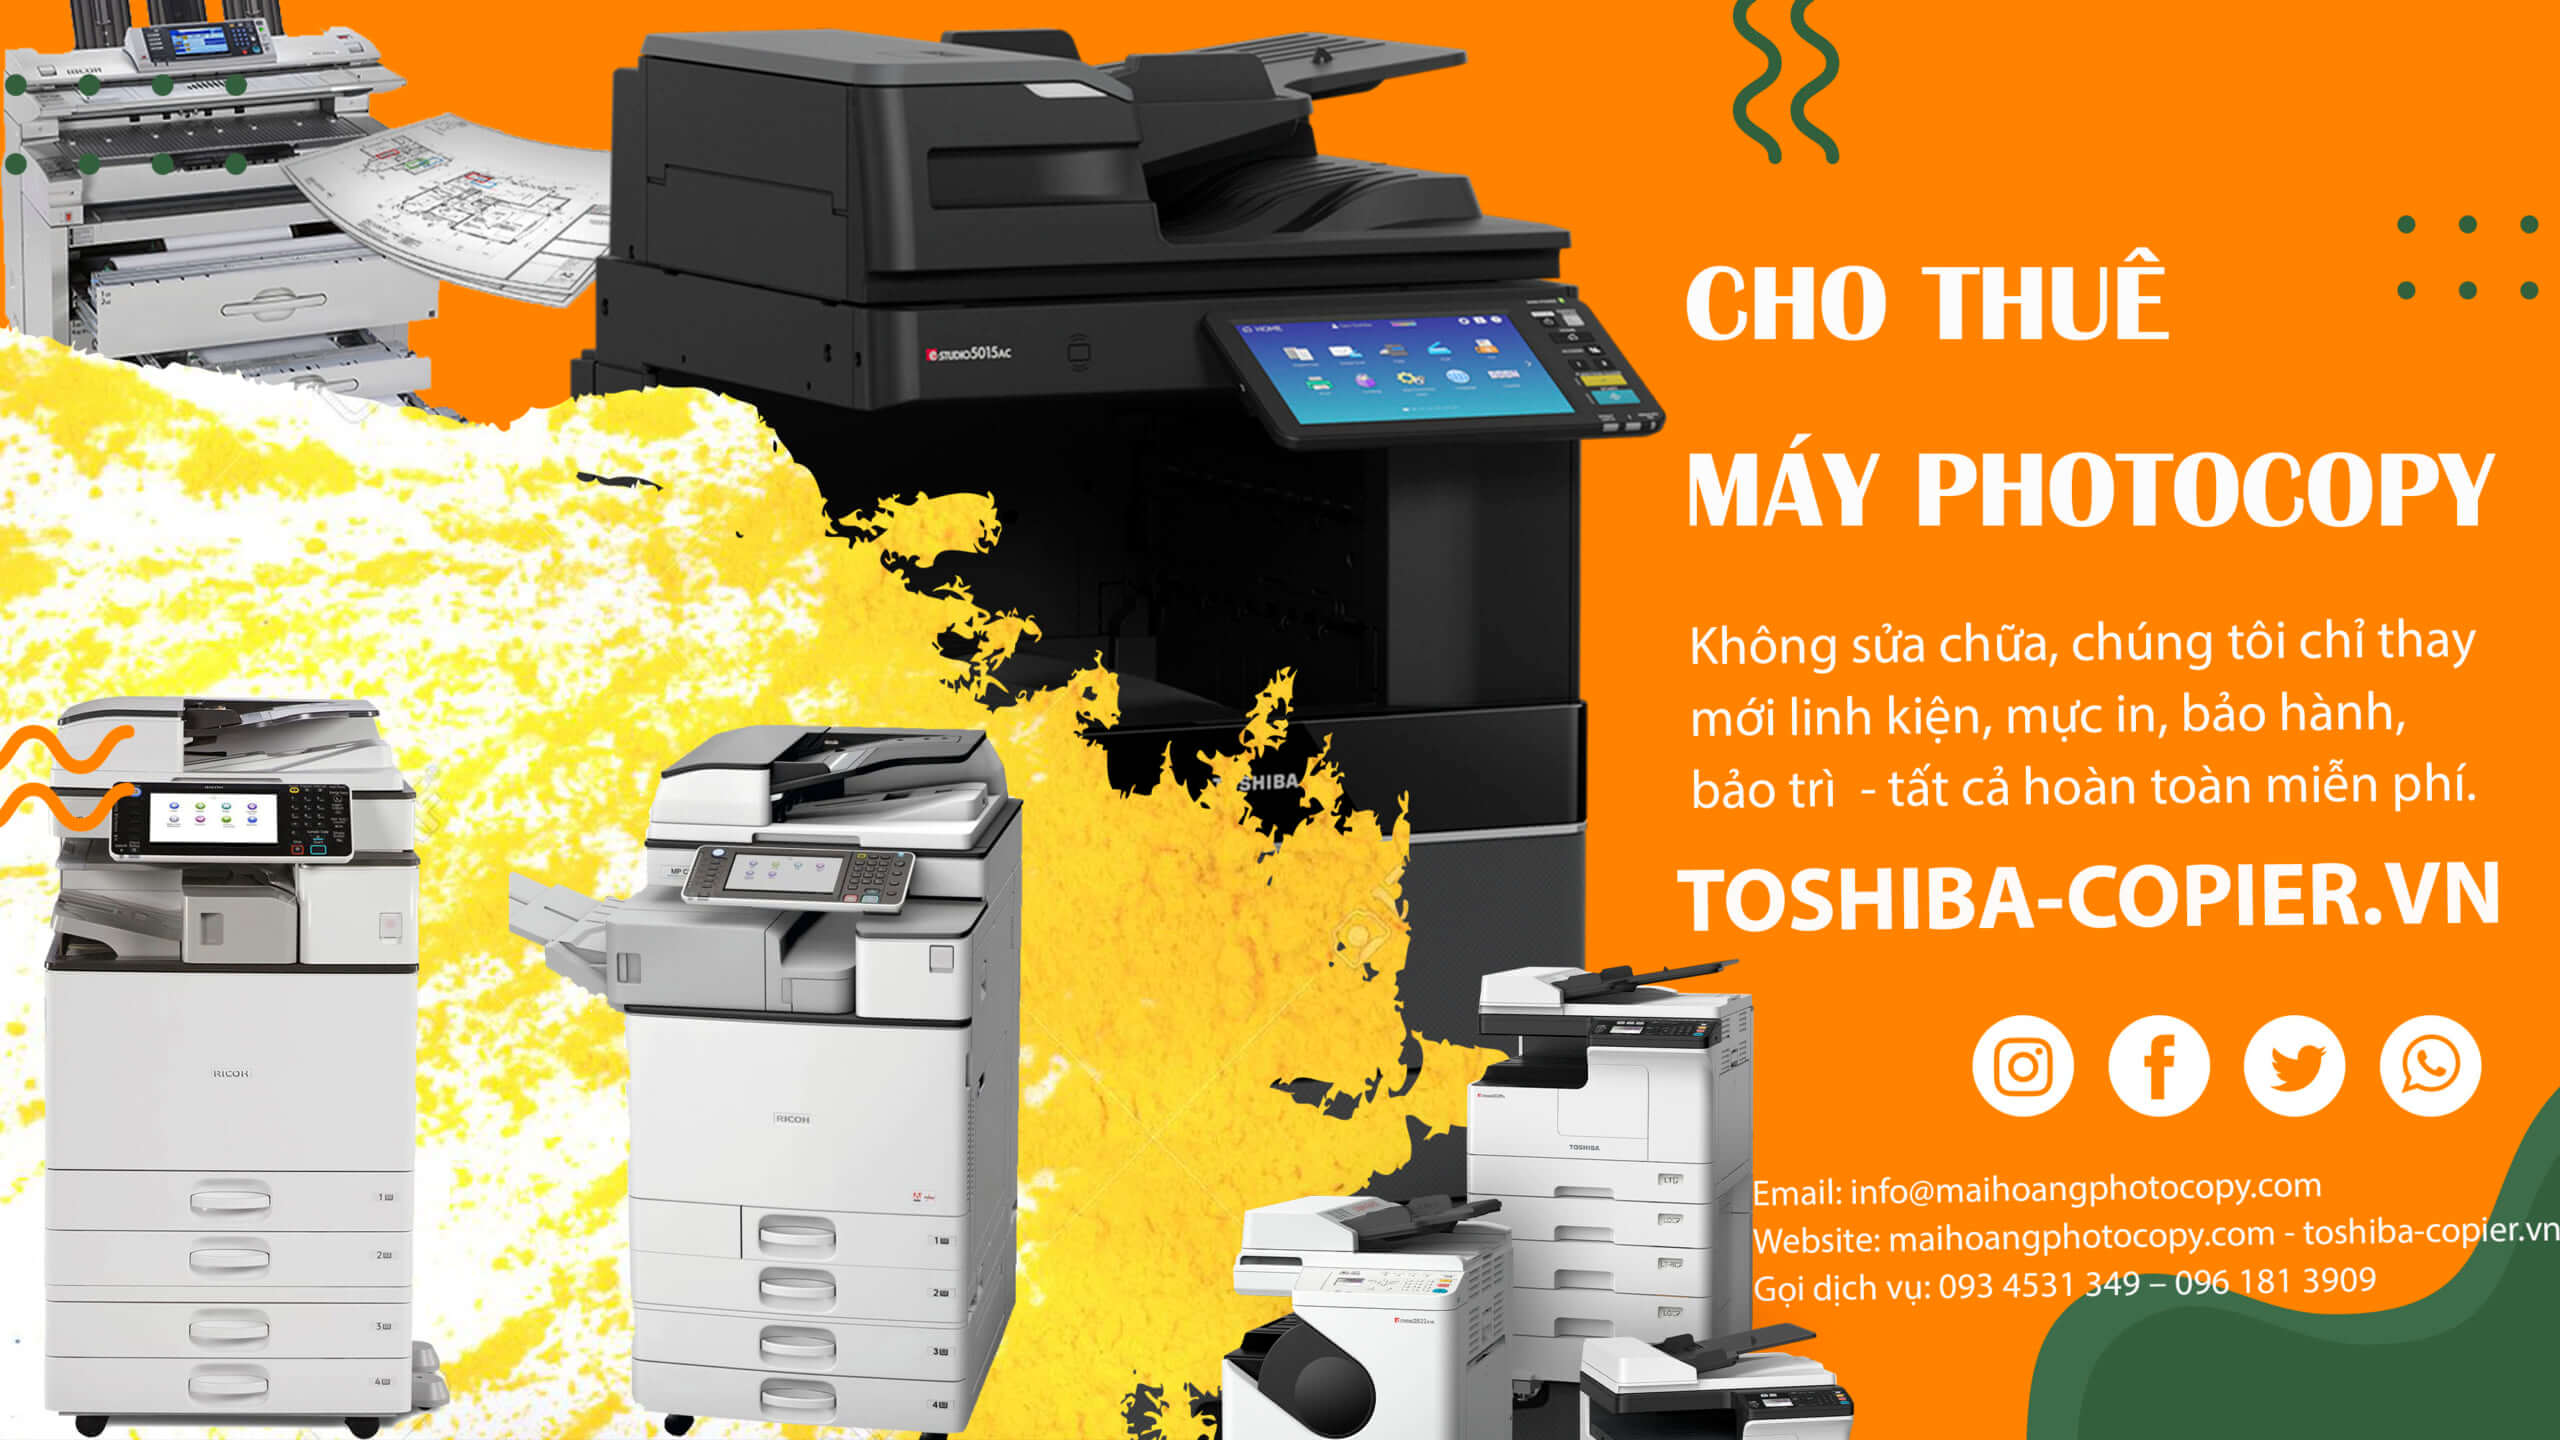 chi phí thuê máy photocopy là bao nhiêu 